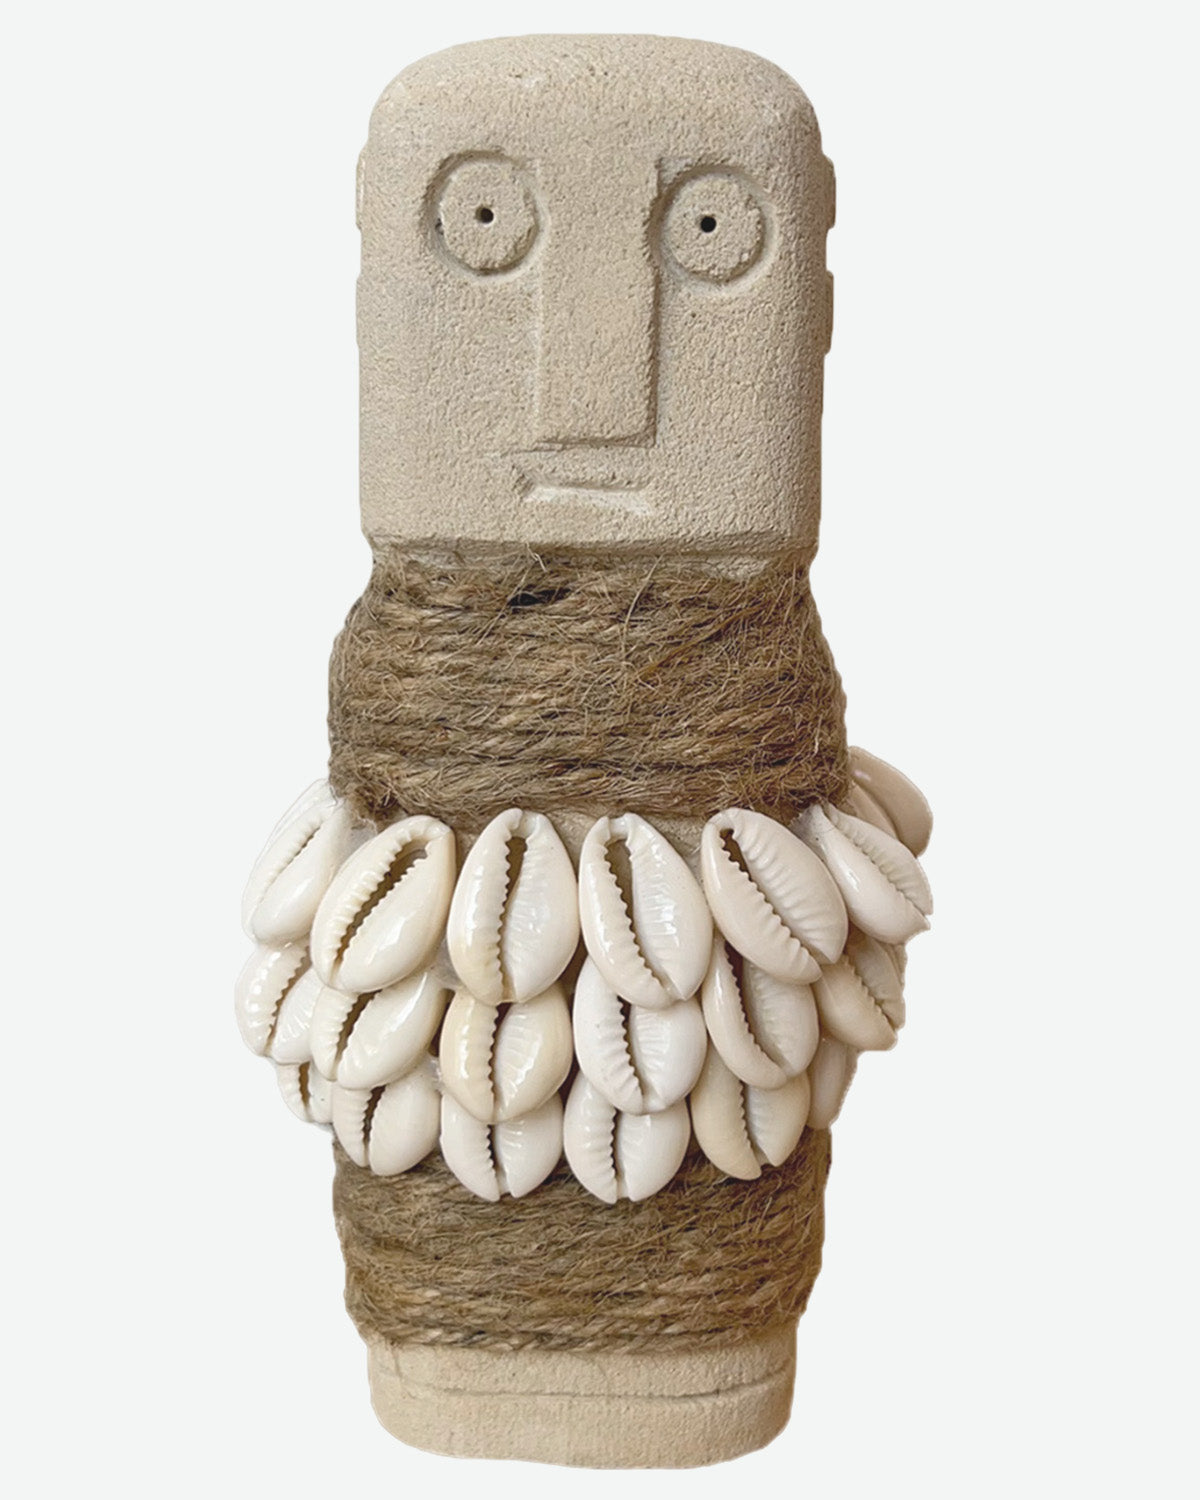 Decorative figure Sumba